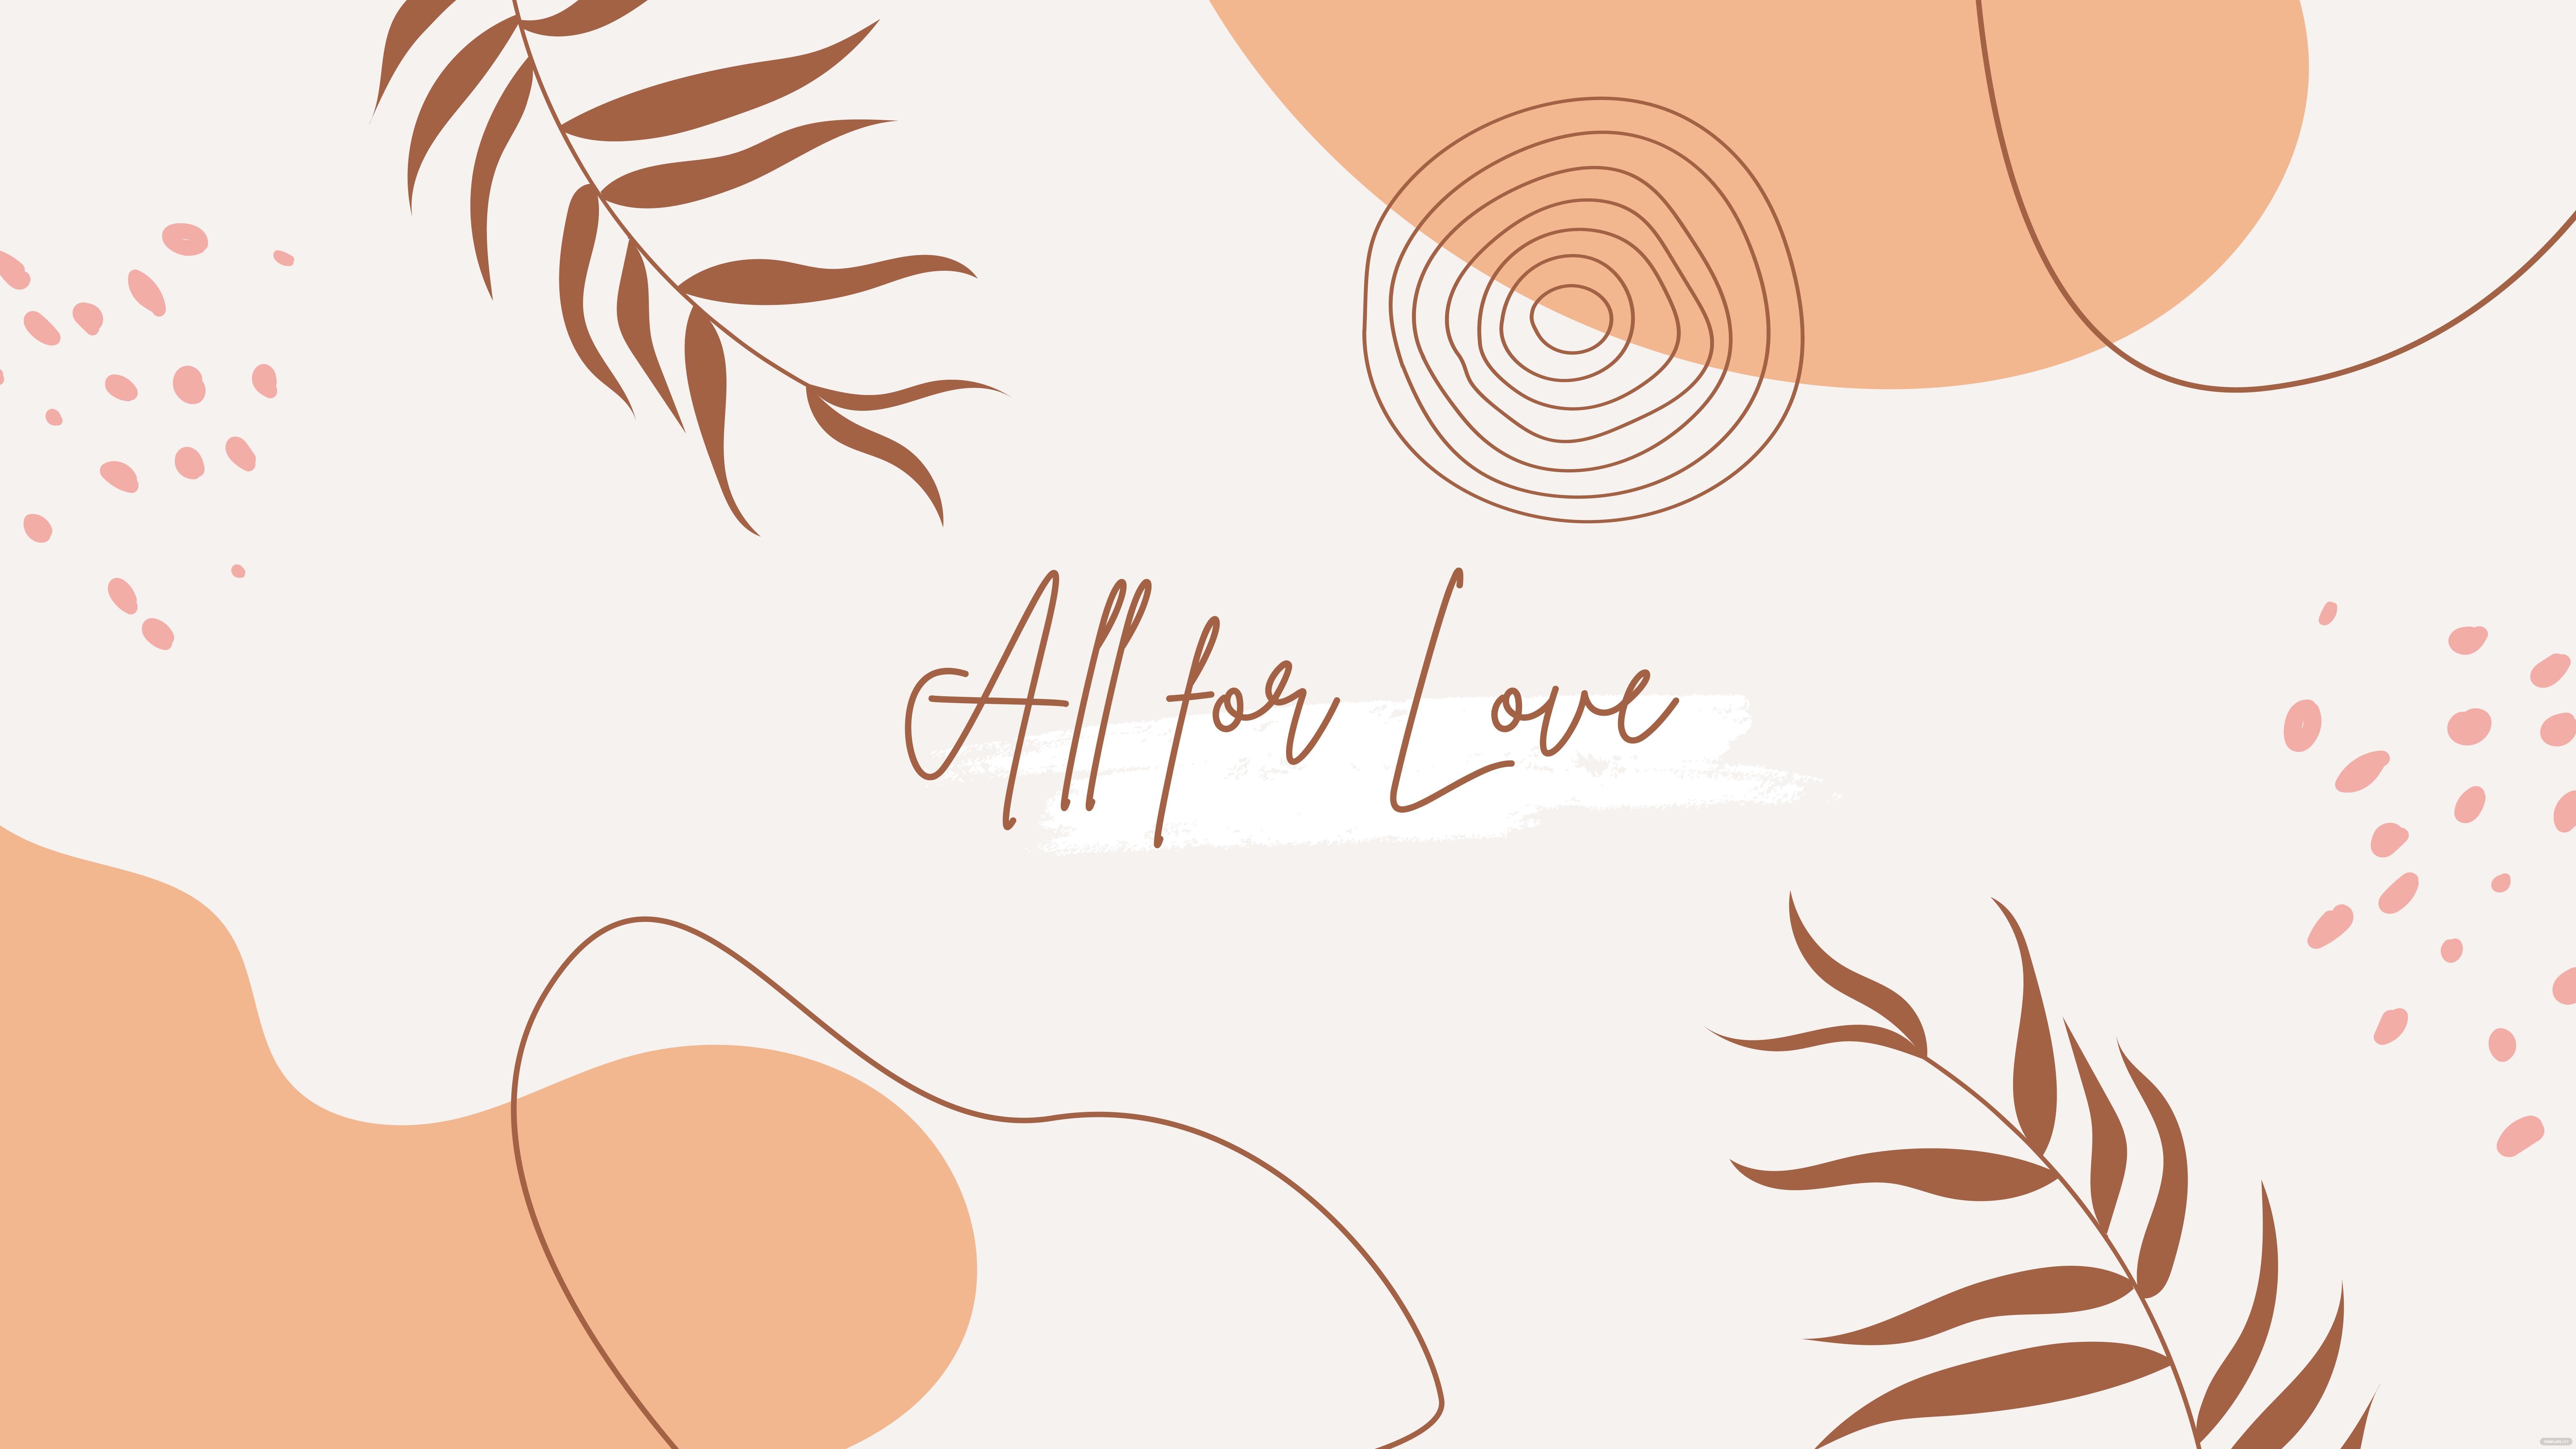 All for love wallpaper - Boho, bright